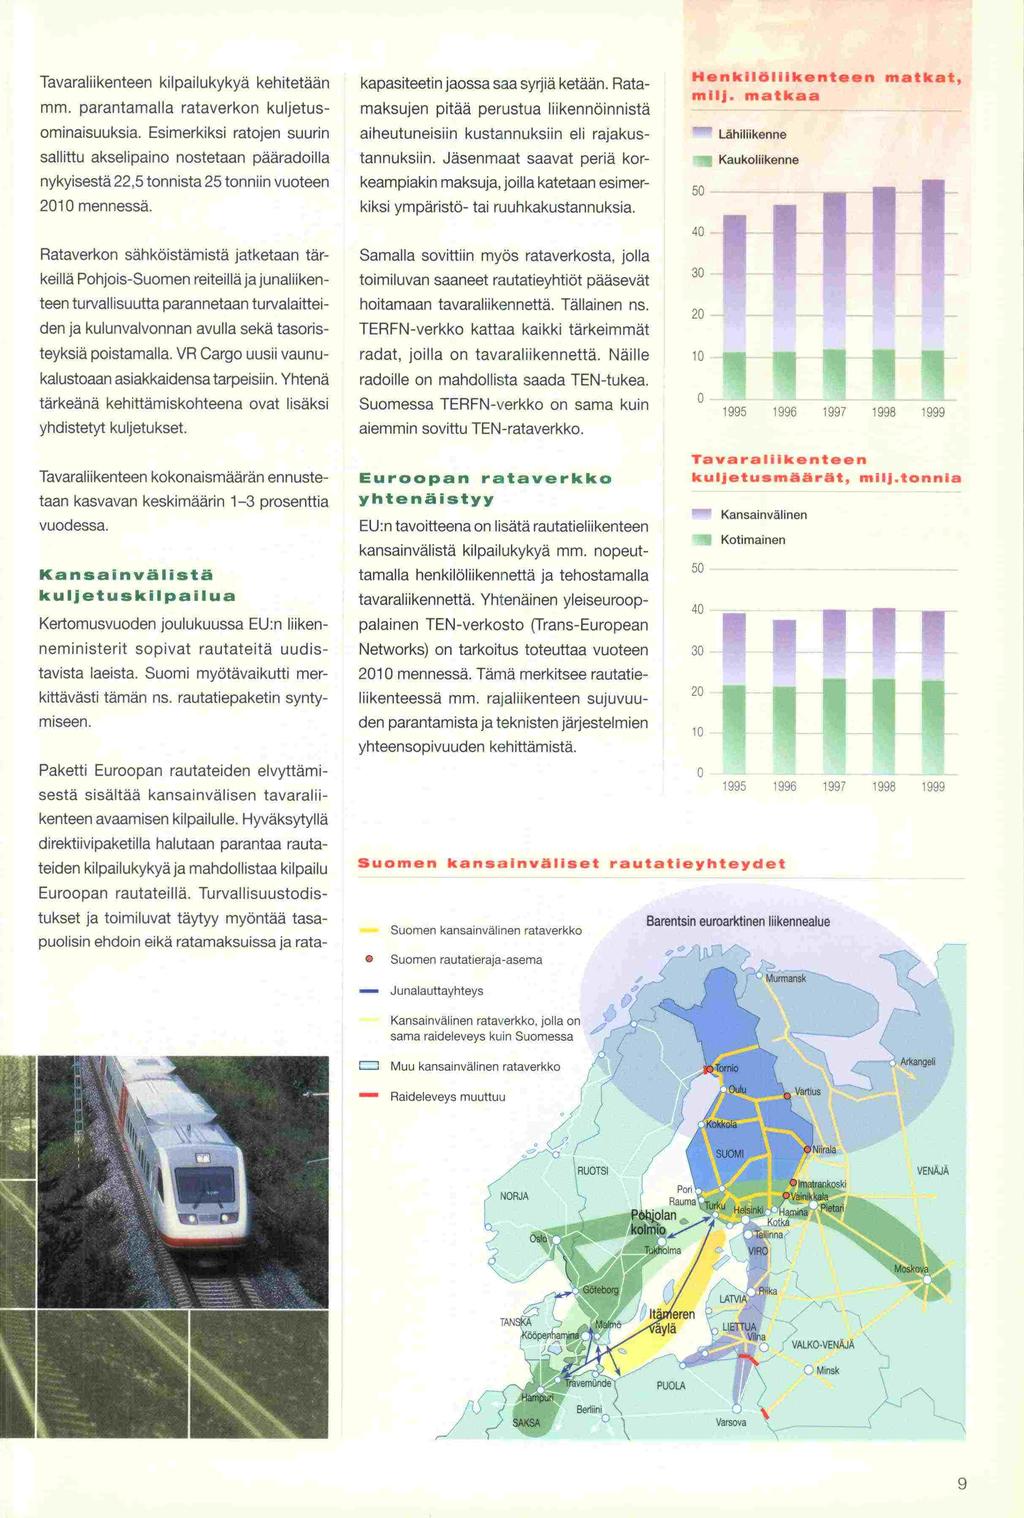 2010 Tavaraliikenteen kilpailukykyä kehitetään parantamalla rataverkon kuljetus- mm. ominaisuuksia.